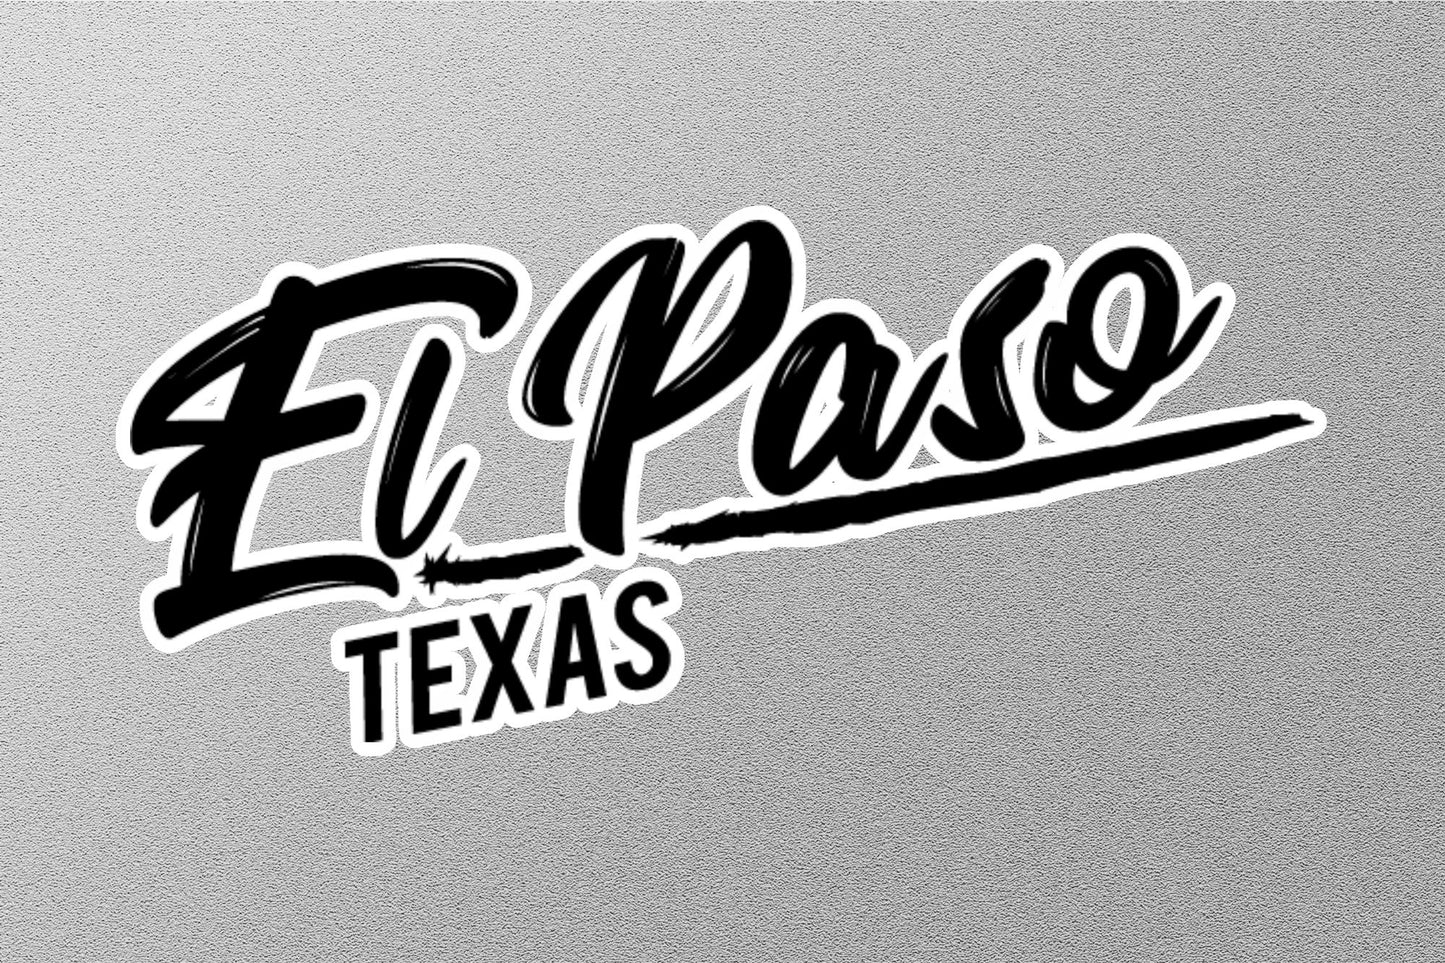 El Paso Texas Sticker